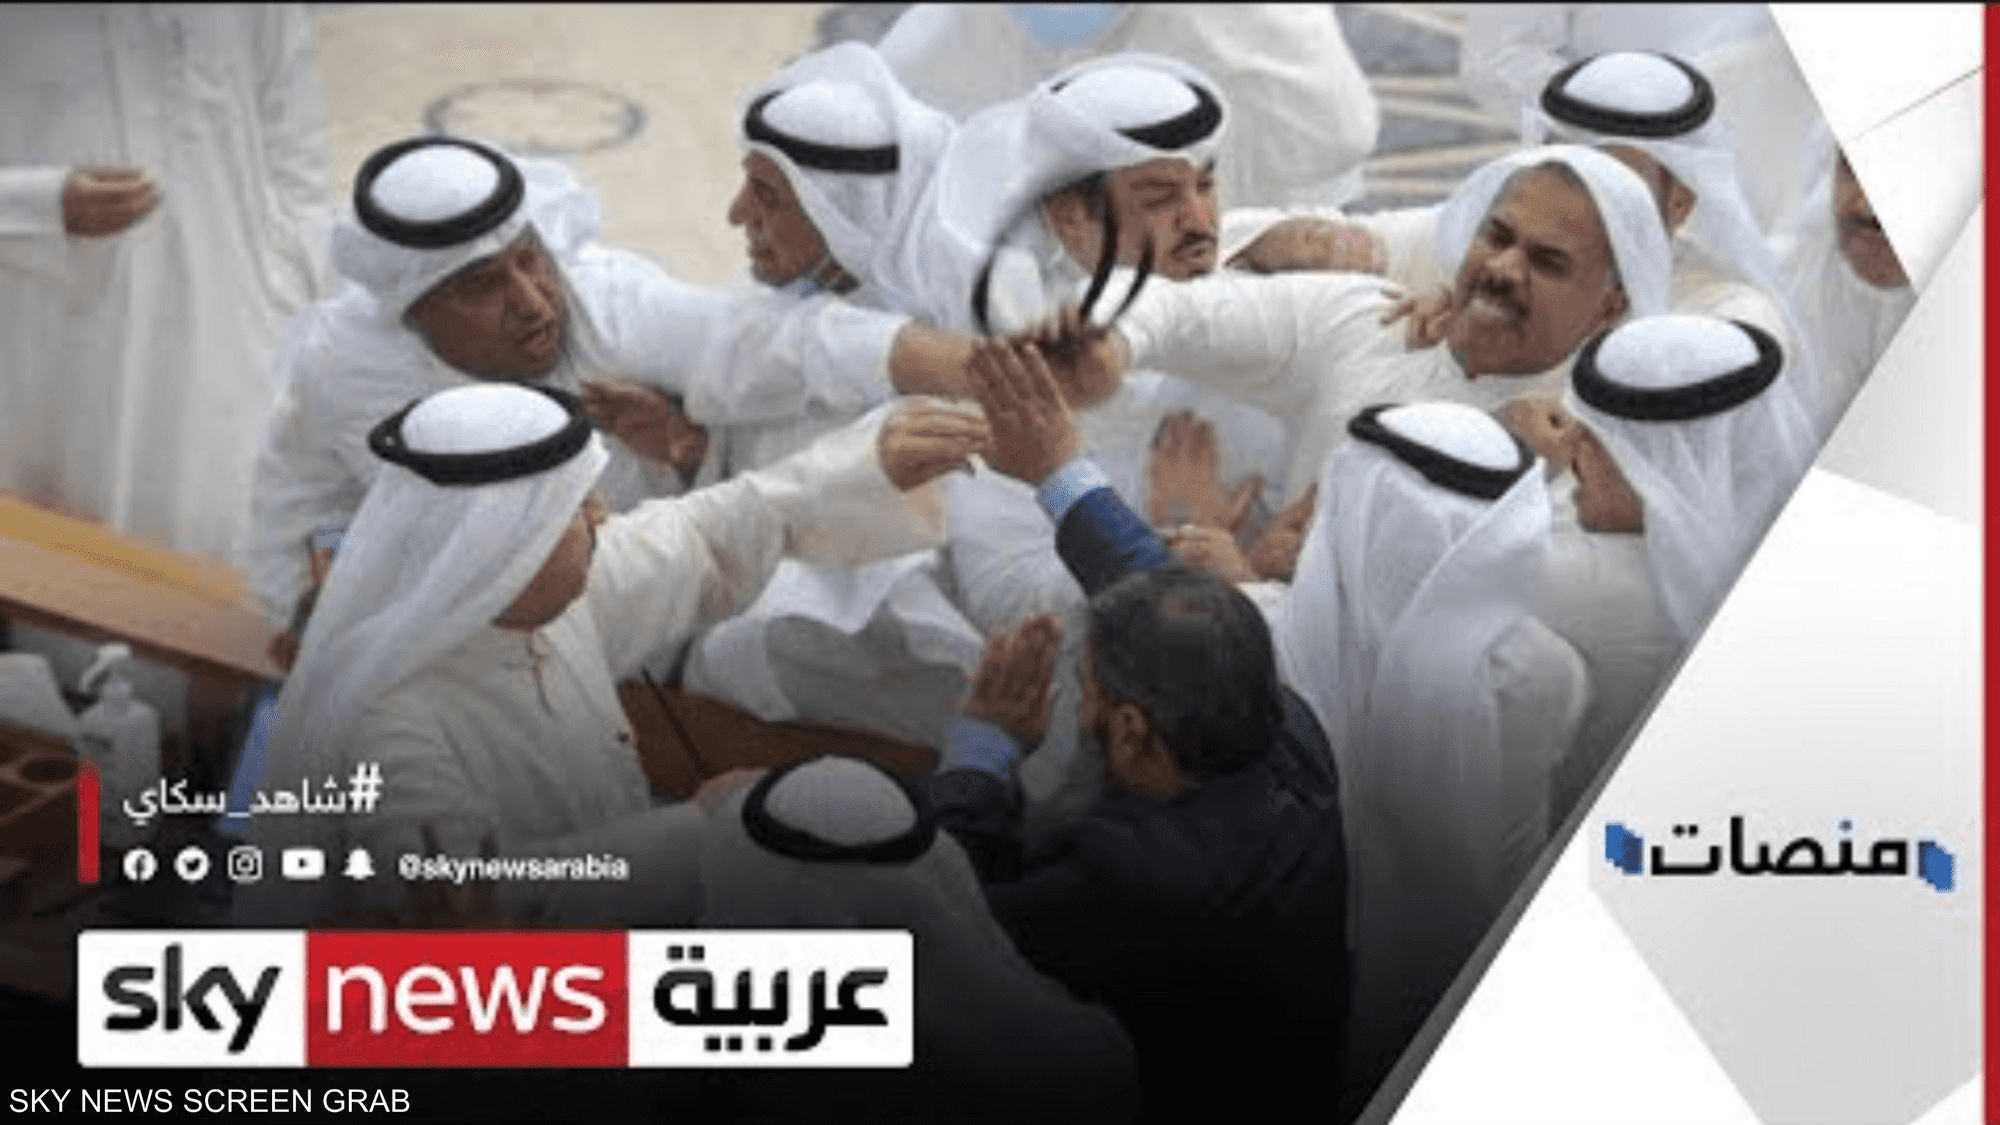 فيديو عراك نواب البرمان الكويتي يغزو مواقع التواصل